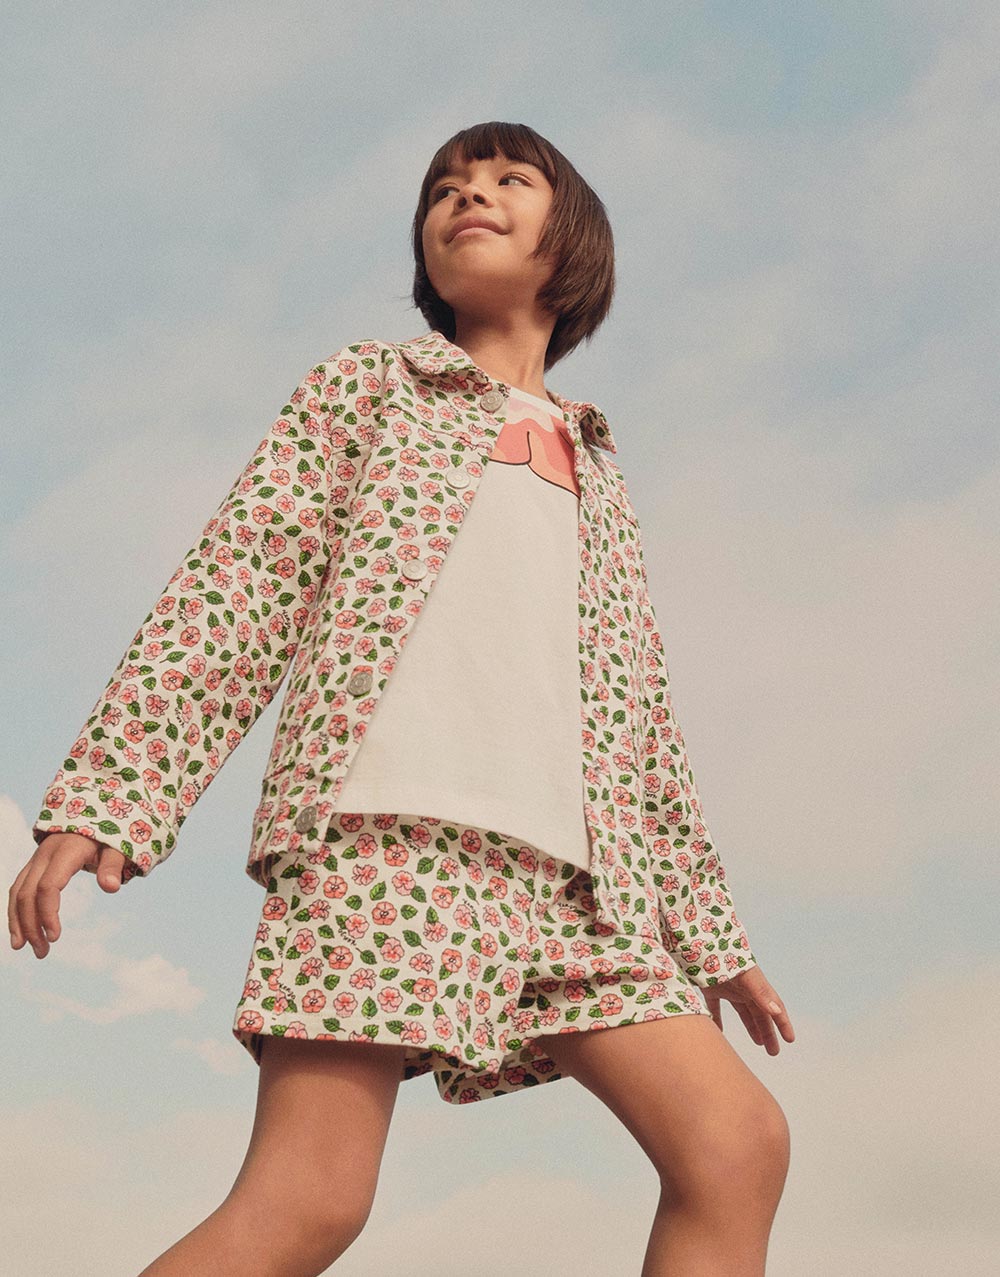 ropa infantil de la marca de lujo Kenzo Kids Paris chaqueta y pantalón cortos florales